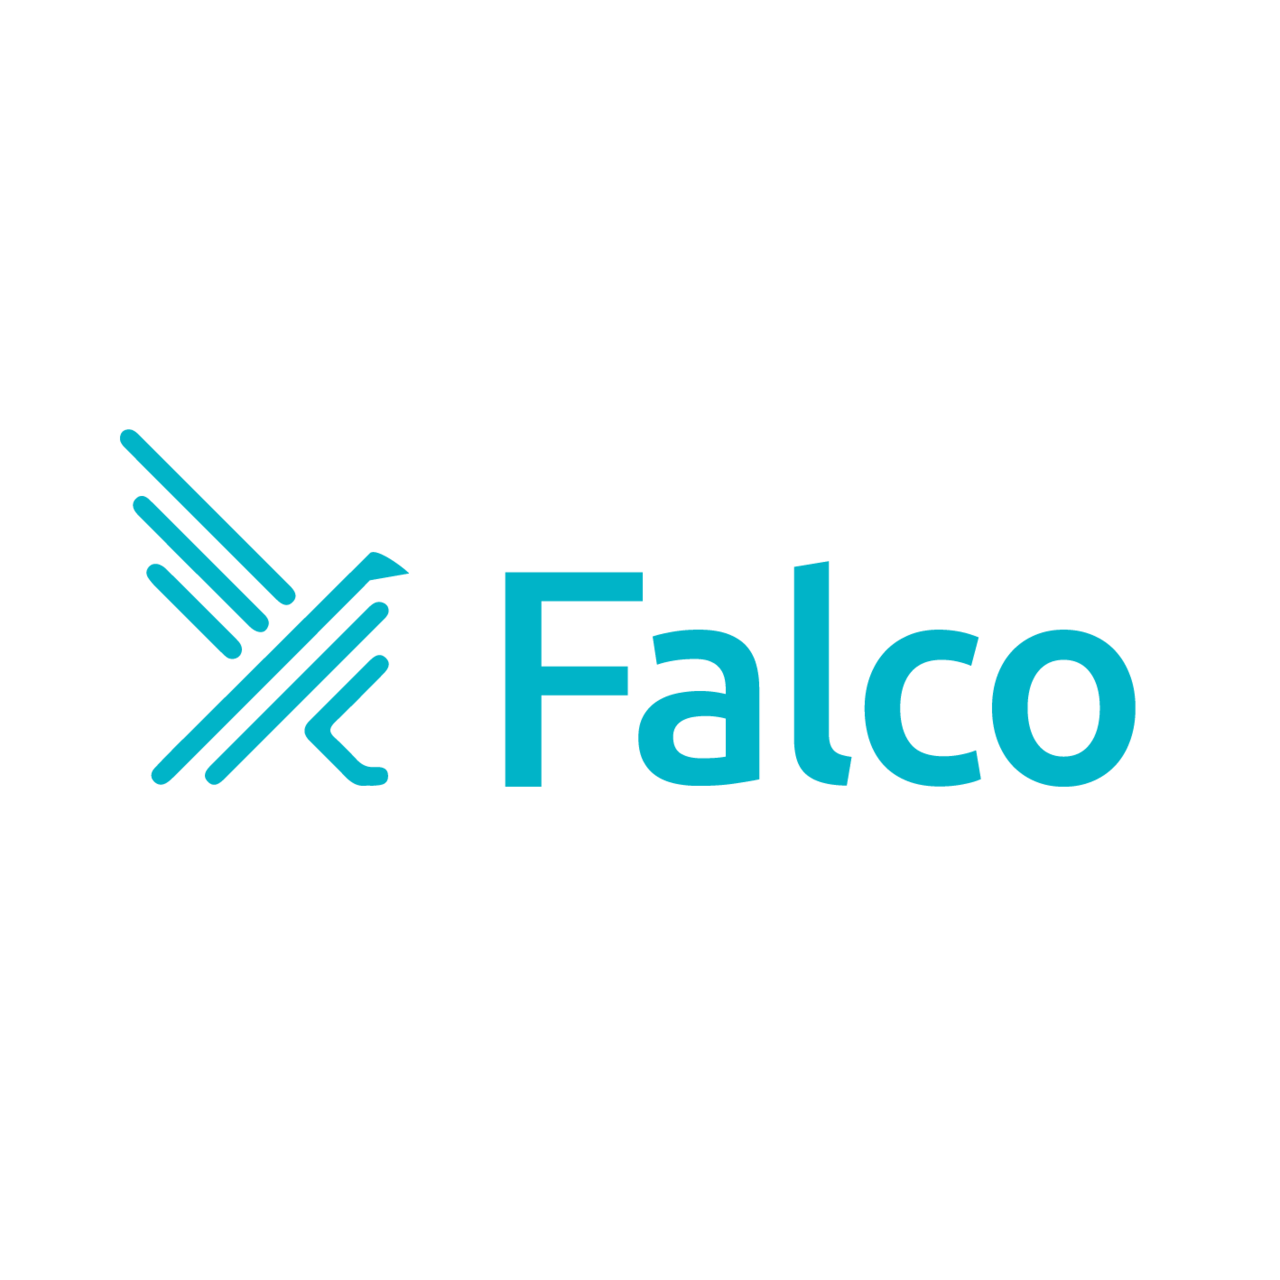 Falcoが、ランタイムセキュリティとしてCNCFインキュベーションへ参画する最初のプロジェクトとなりました